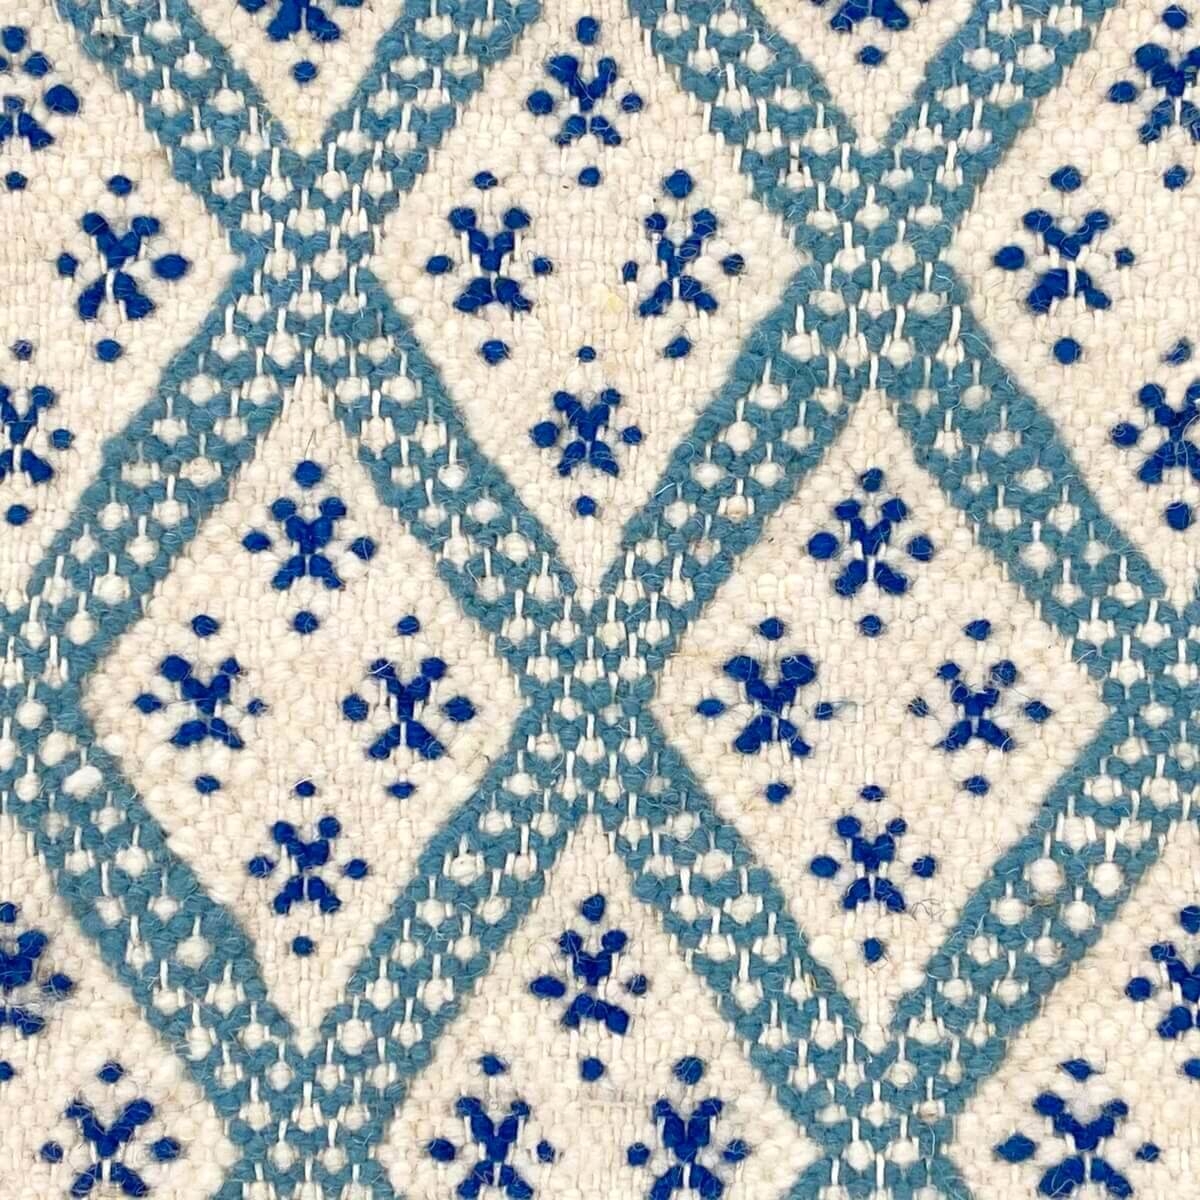 Berber tapijt Tapijt Margoum Ibarkou 155x250 Blauw/Wit (Handgeweven, Wol, Tunesië) Tunesisch Margoum Tapijt uit de stad Kairouan